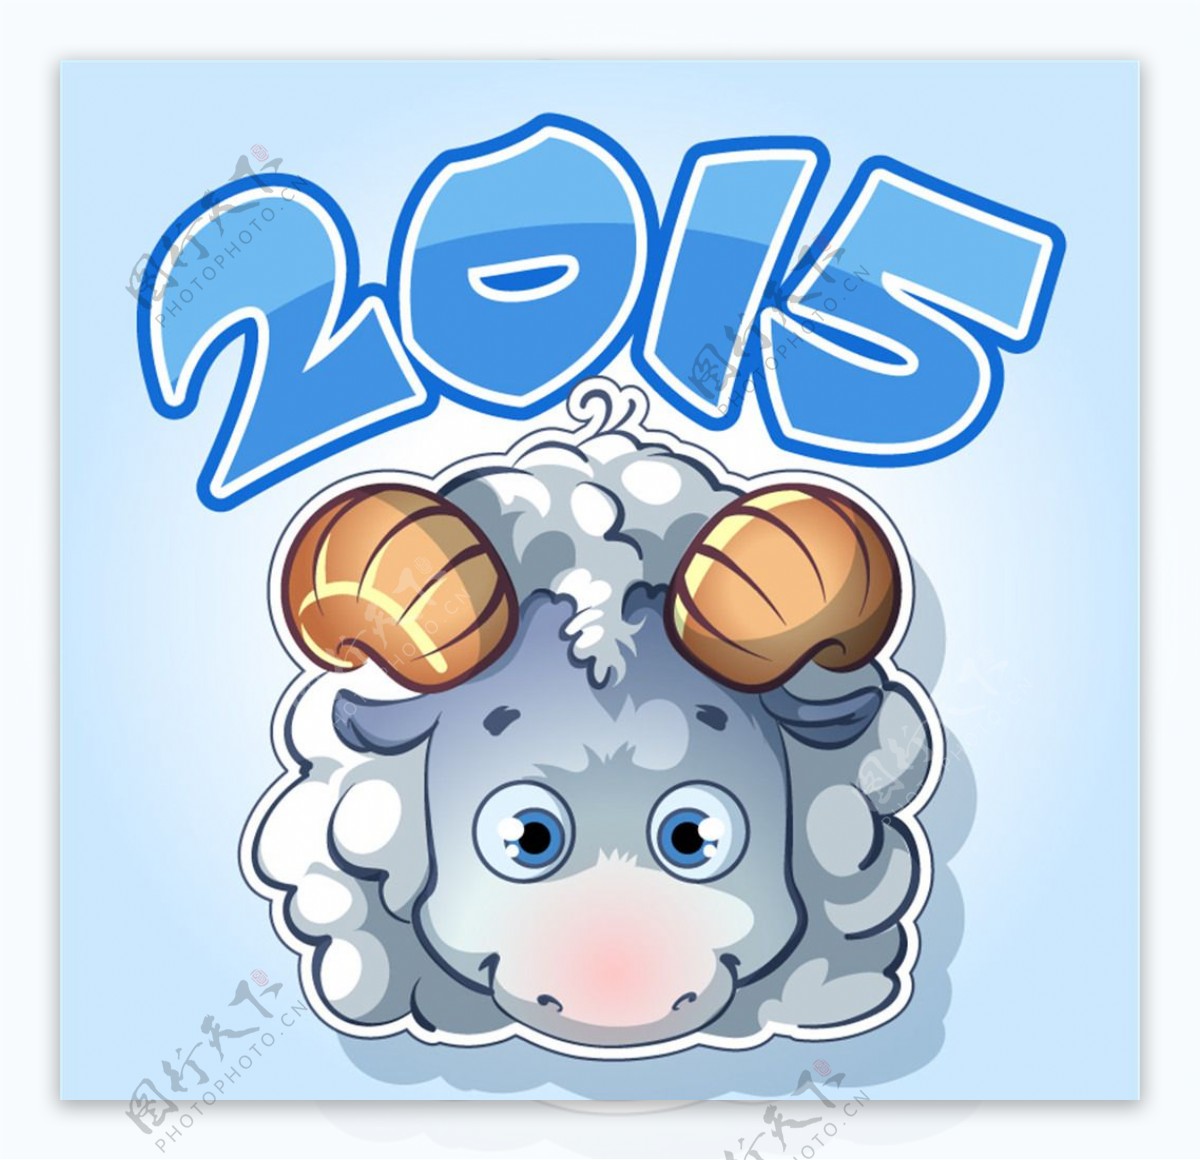 2015可爱卡通绵羊设计矢量素